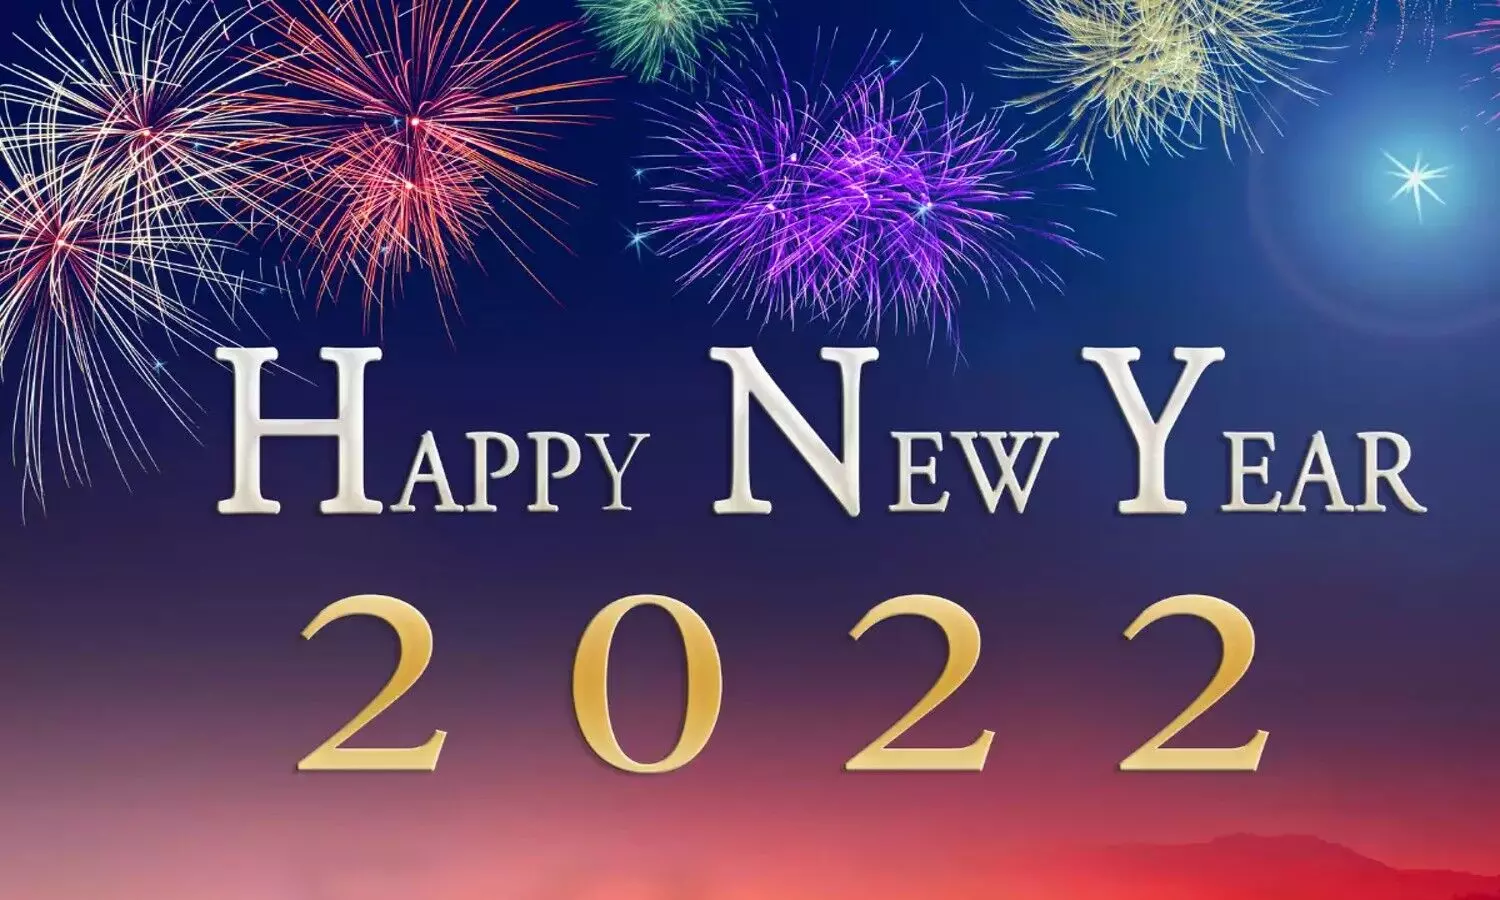 Year 2022: नए साल की खुशियों से करें शुरूआत, इस बार घर पर ही मनाएं न्यू ईयर, करें कुछ खास